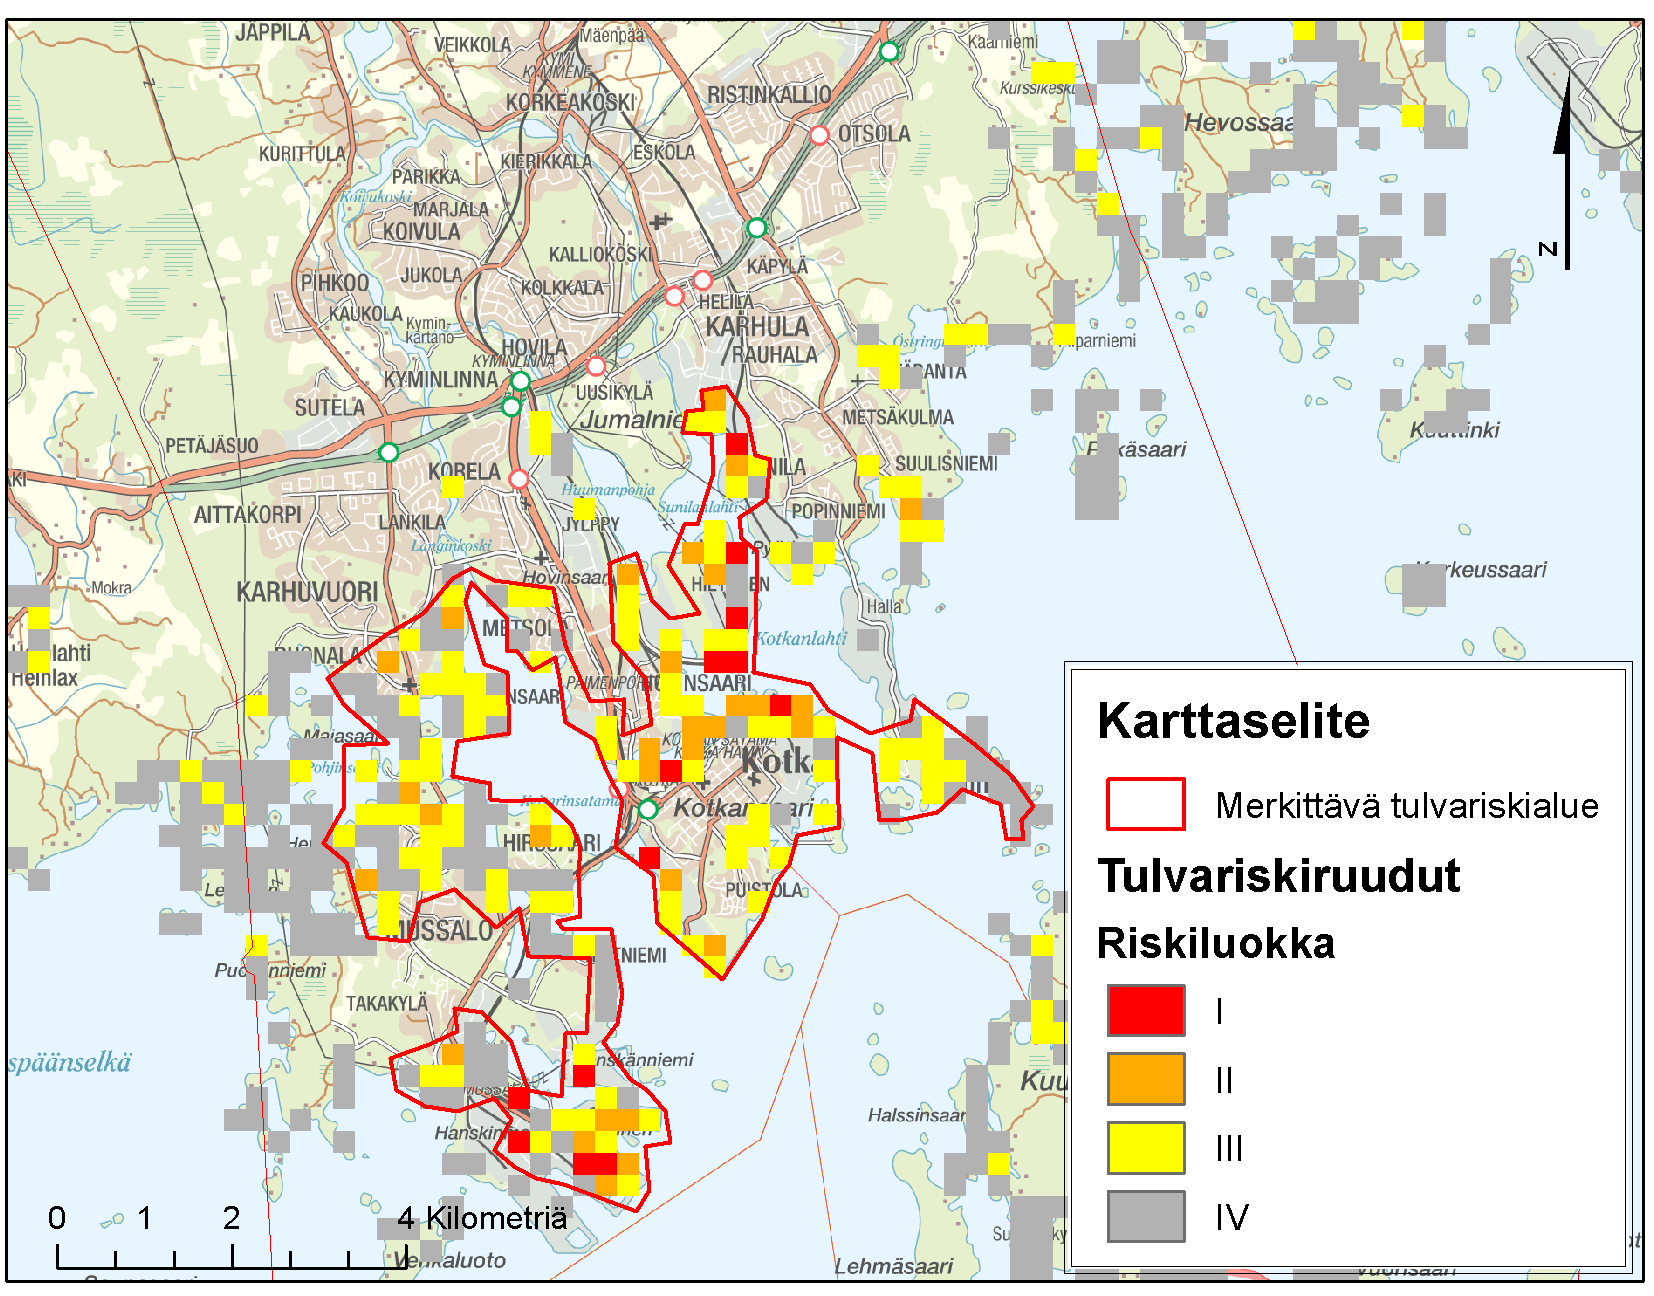 7.2 Kaakkois-Suomen rannikon tulvariskialueet Kohdan 6 tarkastelun perusteella merkittävimmät tulvariskialueet rannikolla sijoittuvat Kotkaan ja Haminaan.